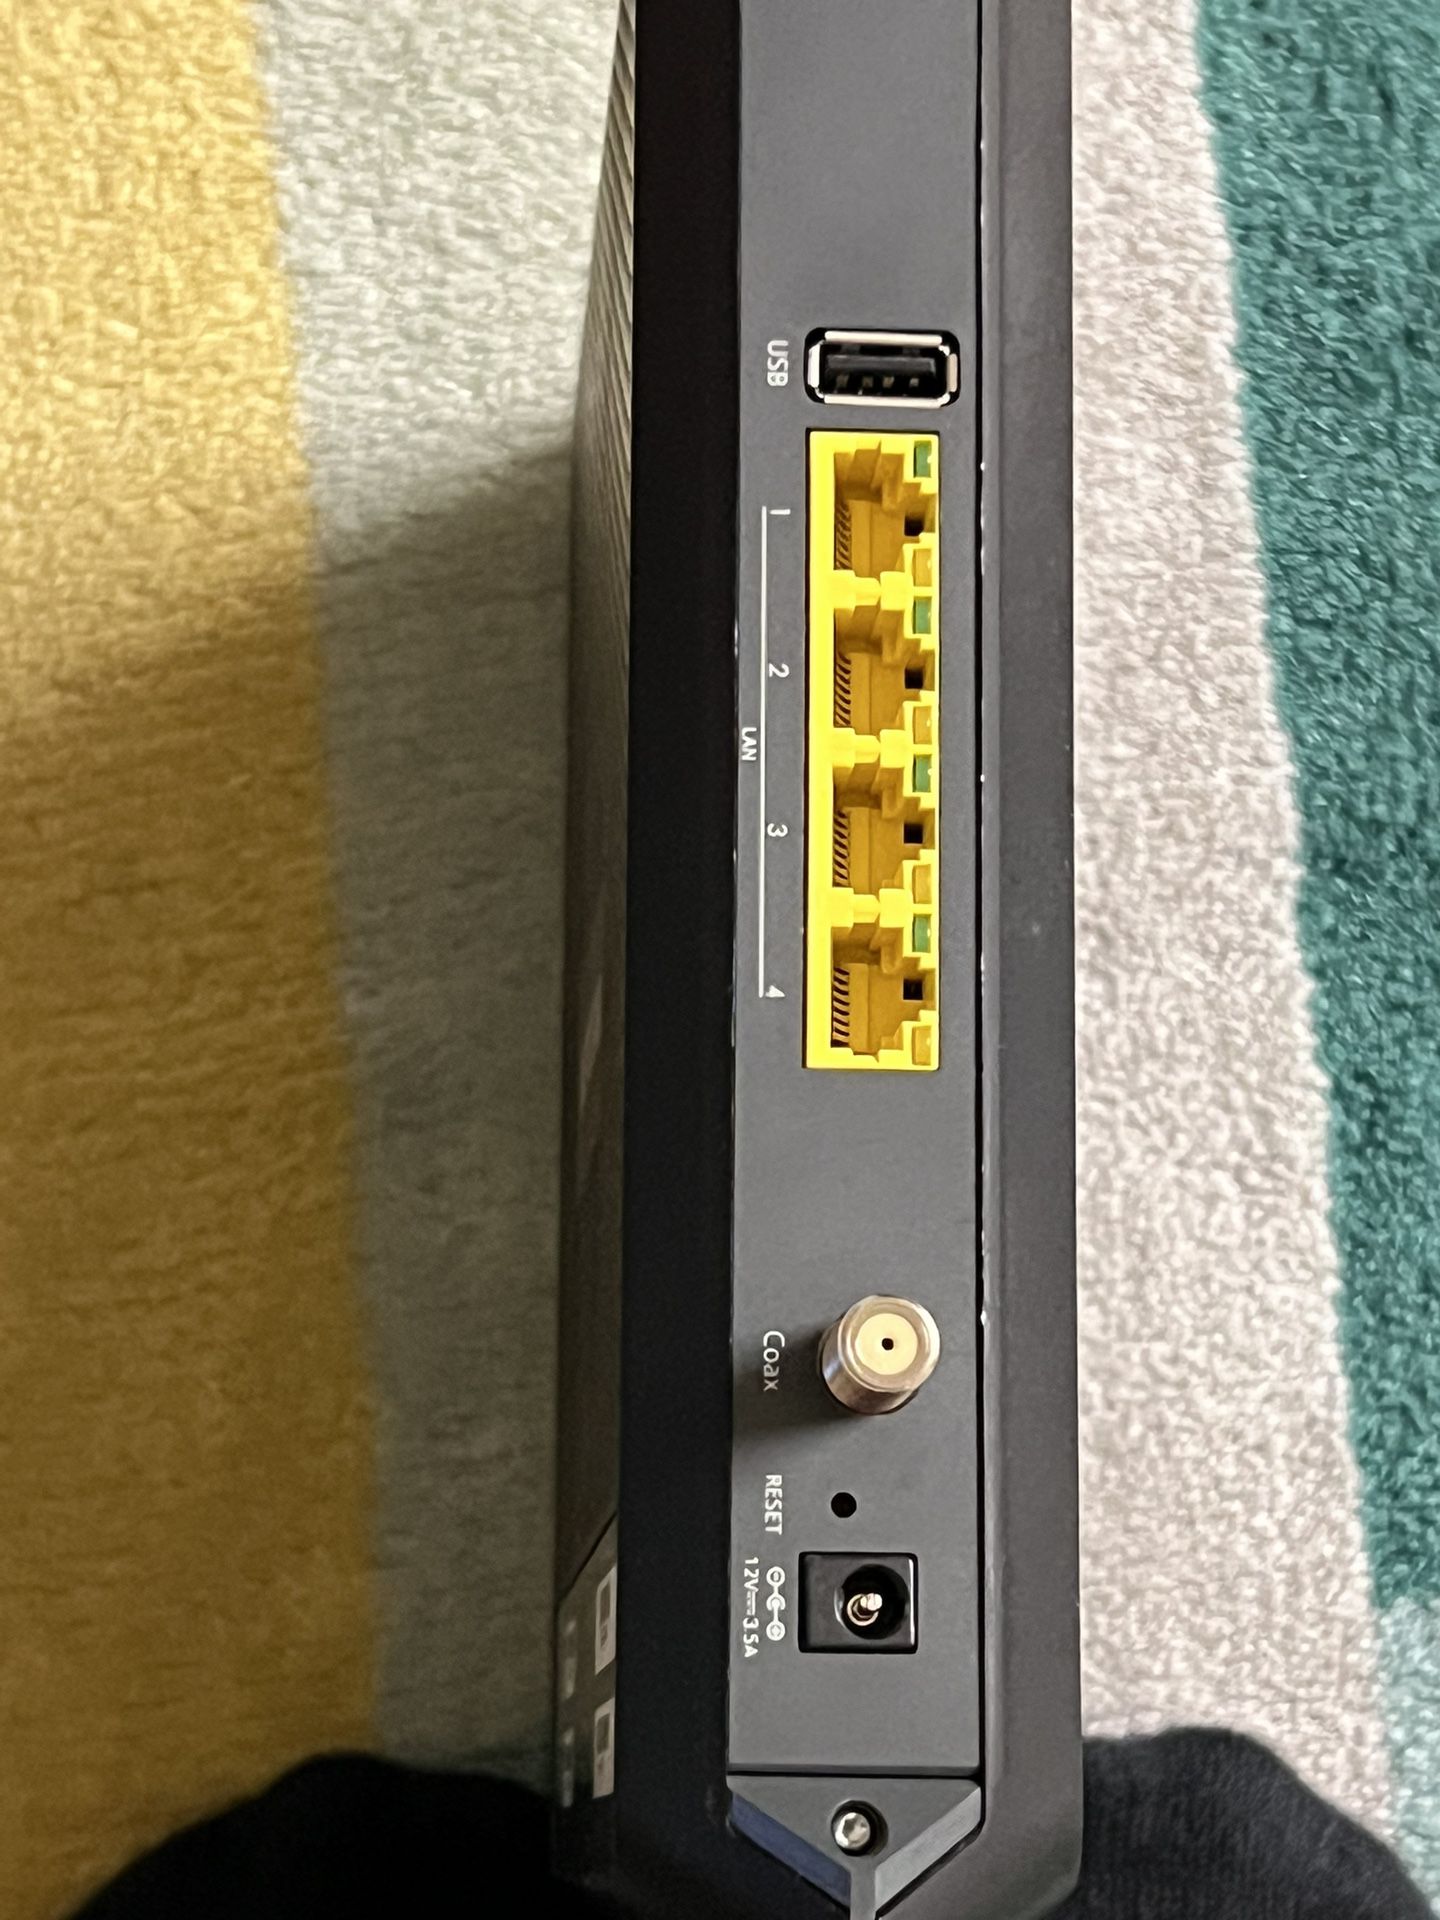 NETGEAR AC1900 Modem Router 